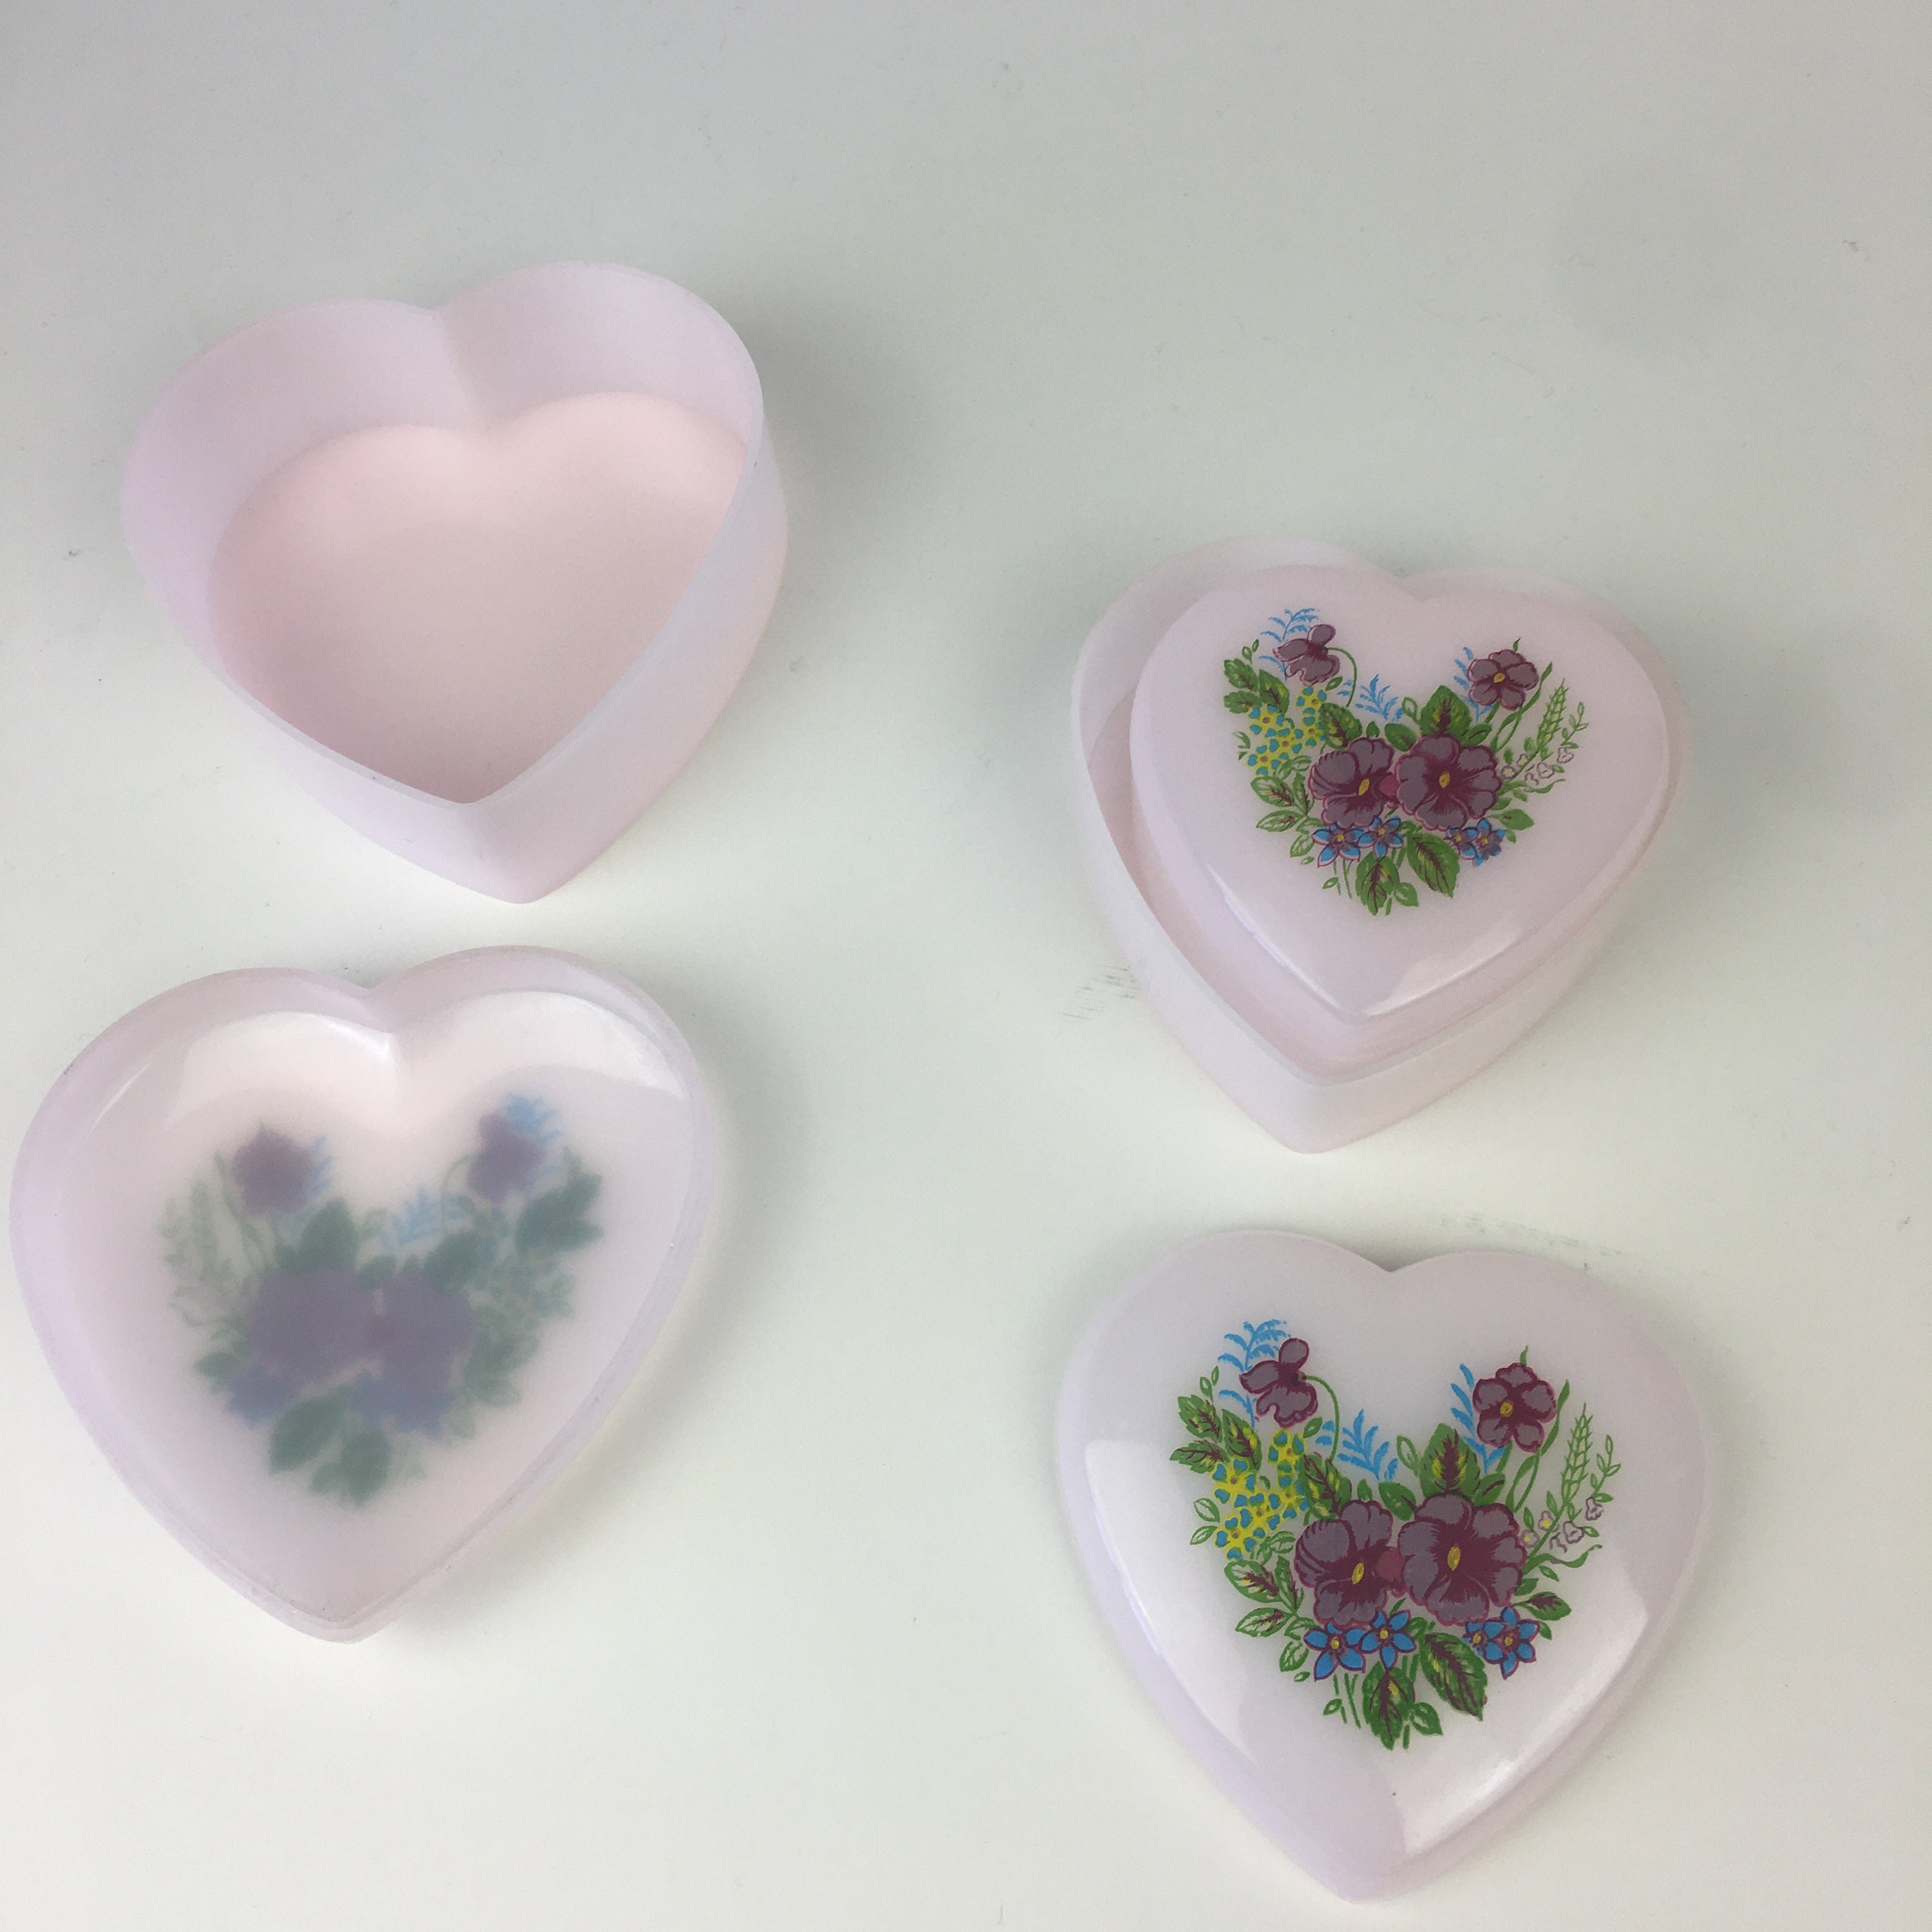 Vtg Plastic Nesting Hearts Trinket Boxes Set of 3 Pale Pink Floral